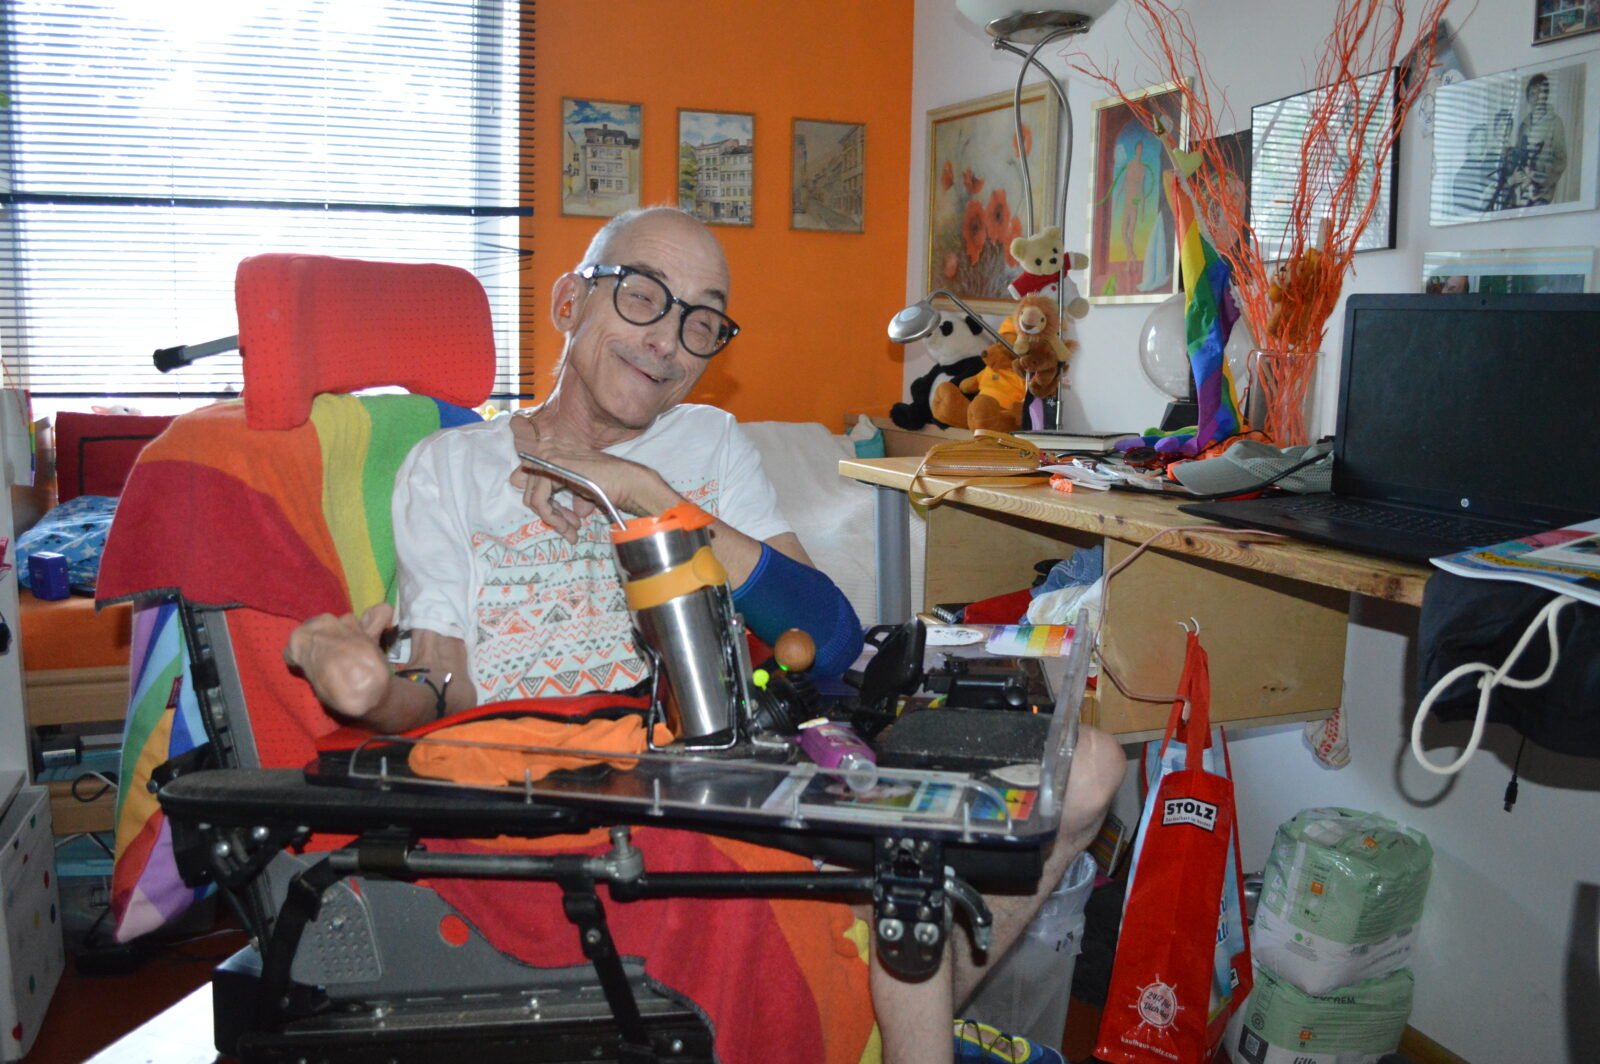 IM Bild zu sehen ist Lutz Germann, der in seinem Rollstuhl sitzt und lächelt. AM Rollstuhl und im Hintergrund sind Regenbogenflaggen.